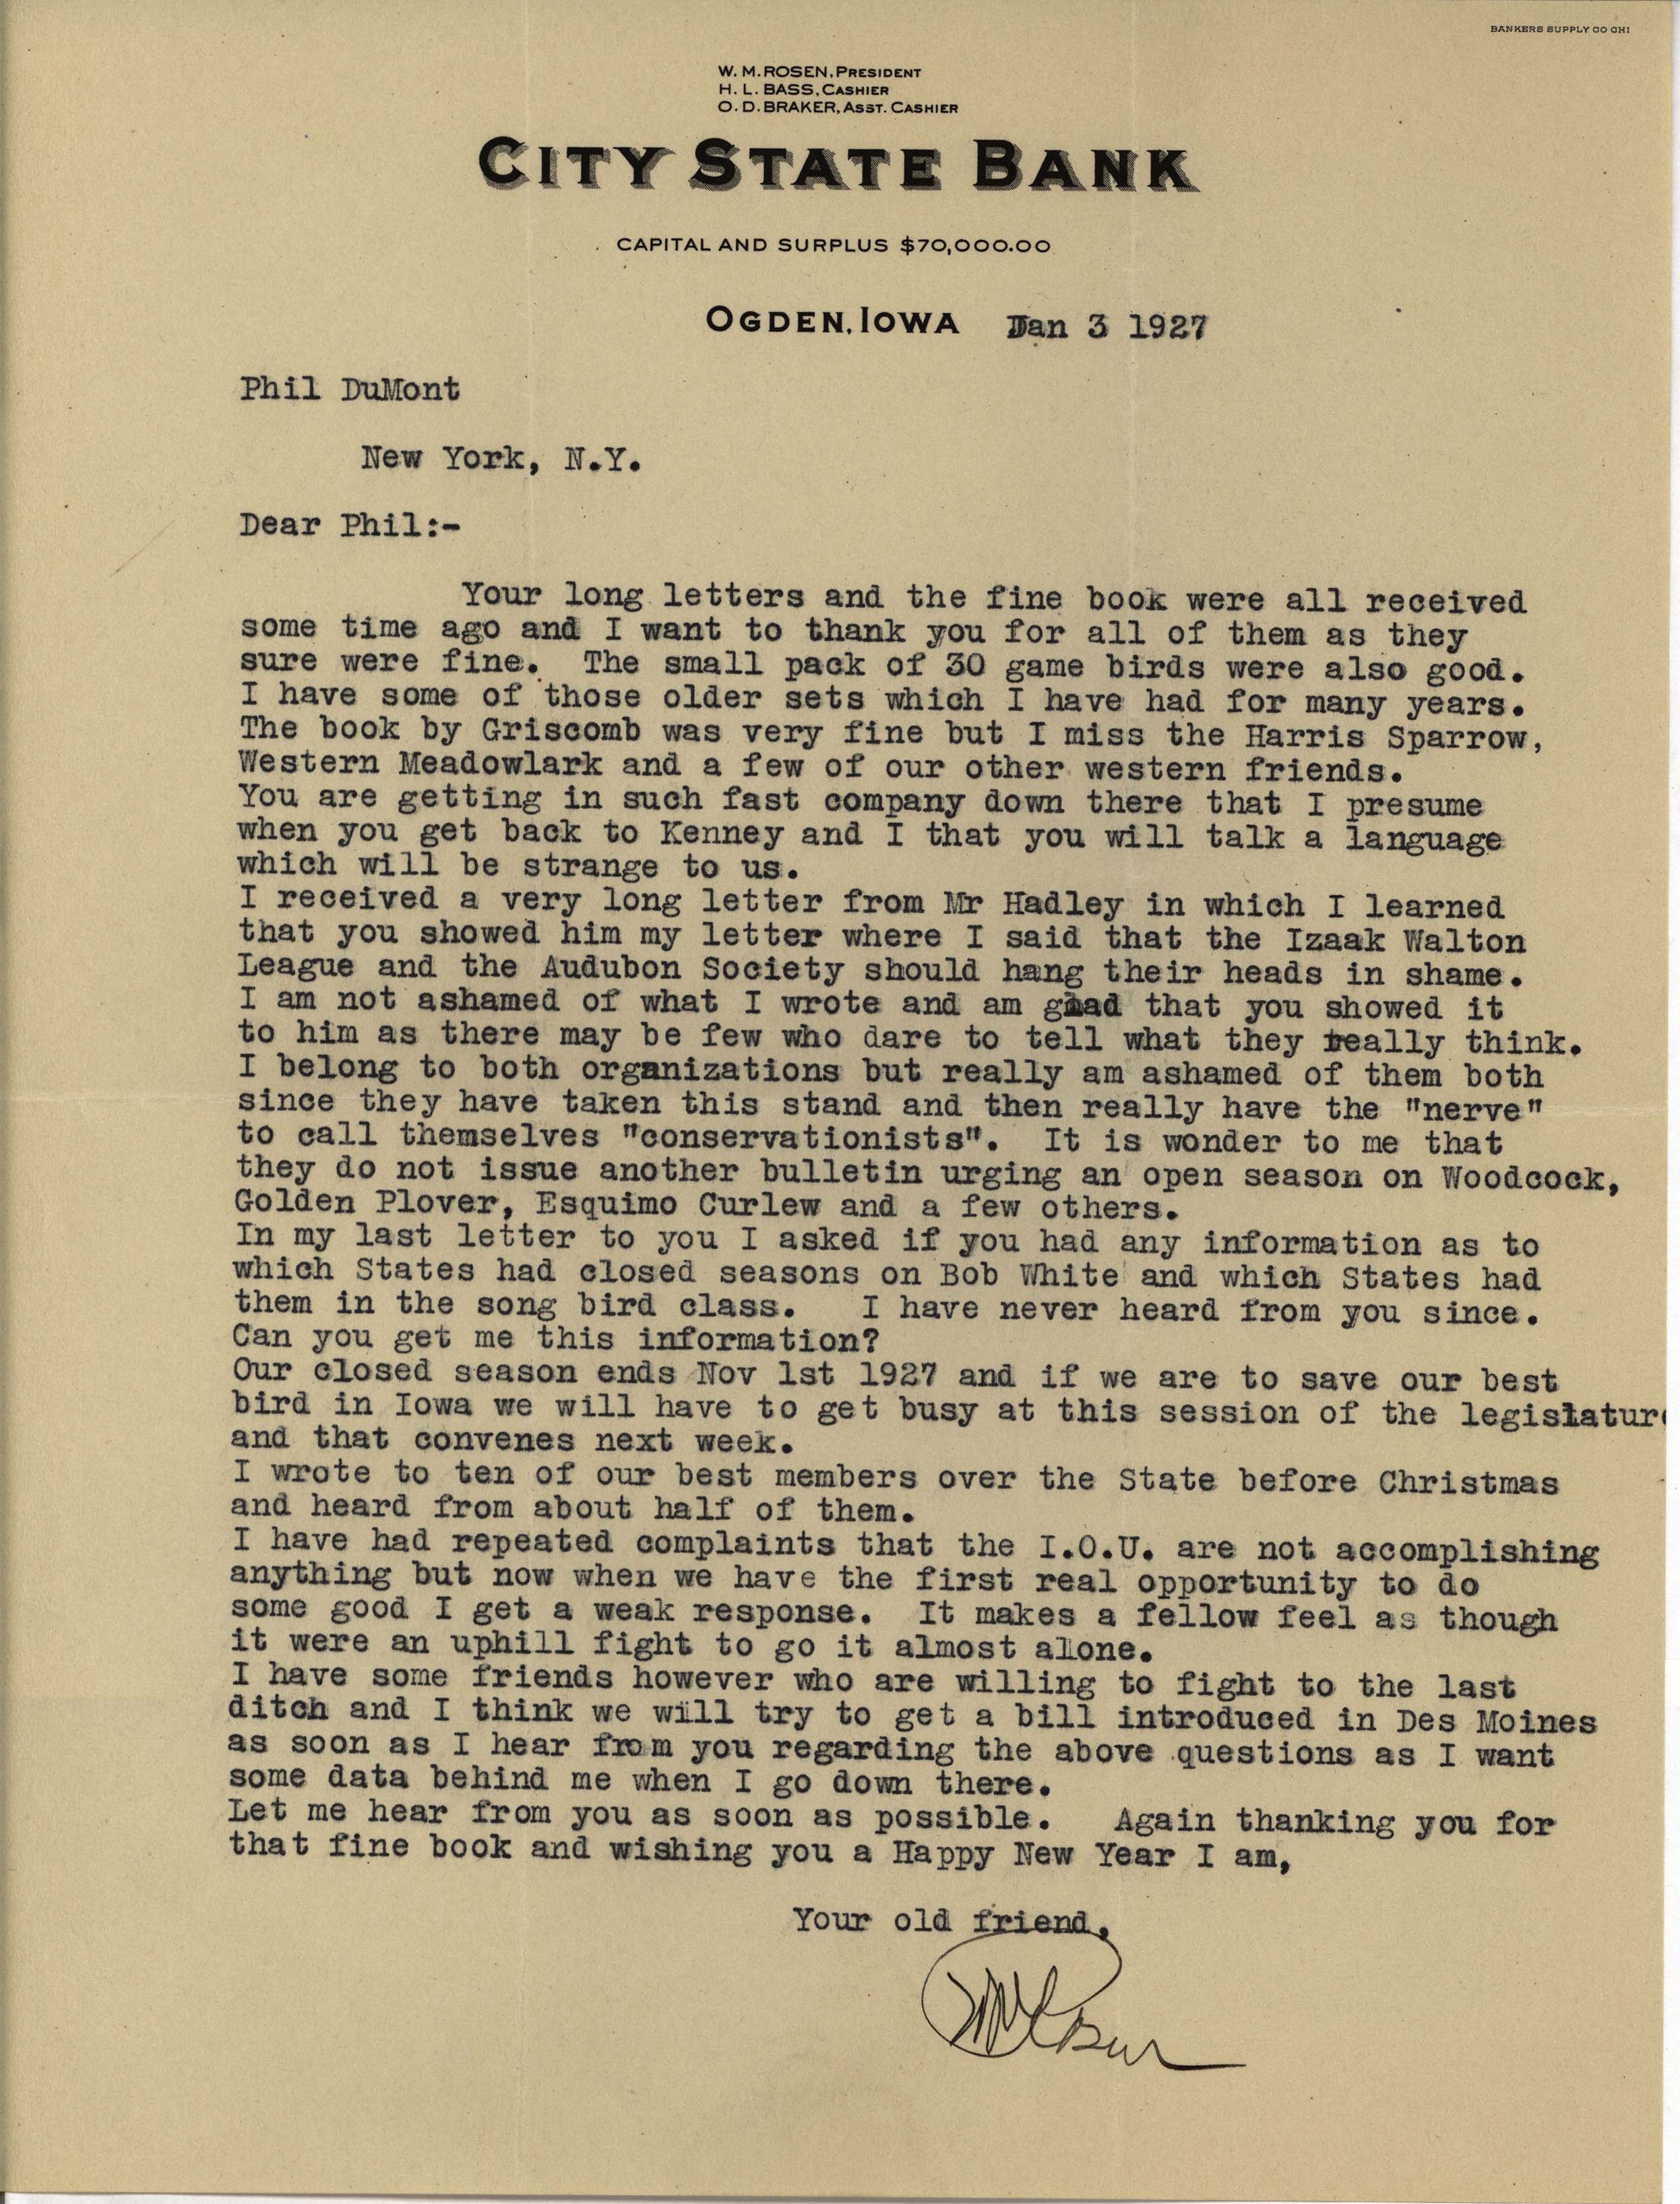 Walter Rosene letter to Philip DuMont regarding wildlife conservation, January 3, 1927